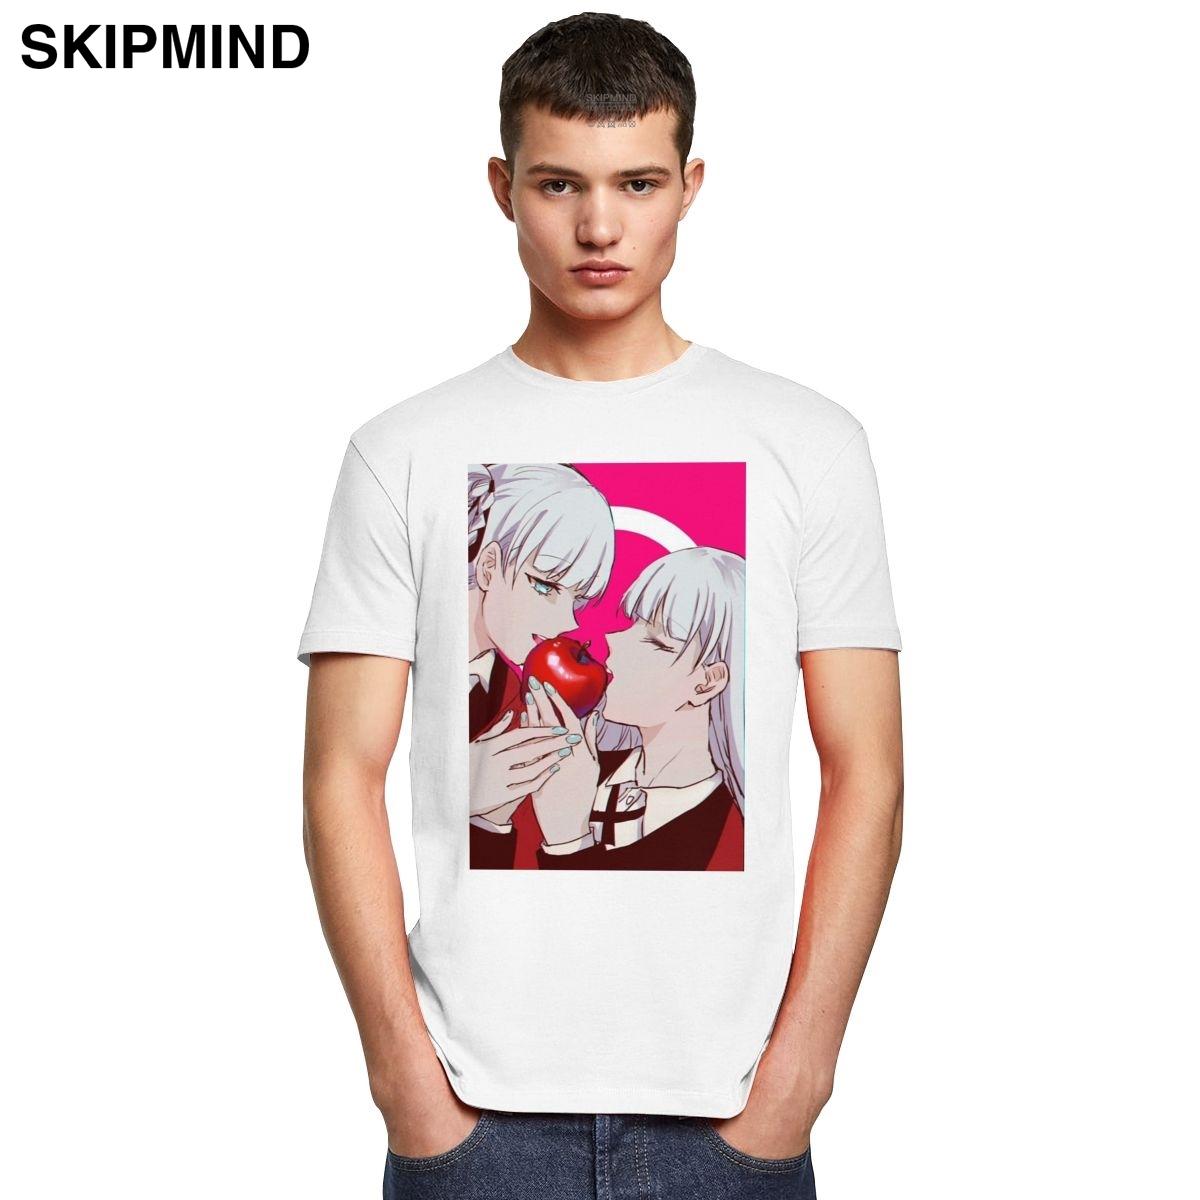 Изображение товара: Модная мужская рубашка Kakegurui с изображением японской манги, мягкая хлопковая футболка с короткими рукавами, футболка с изображением фанатов аниме, футболка с героями мультфильма «кирари момомами и ририка»